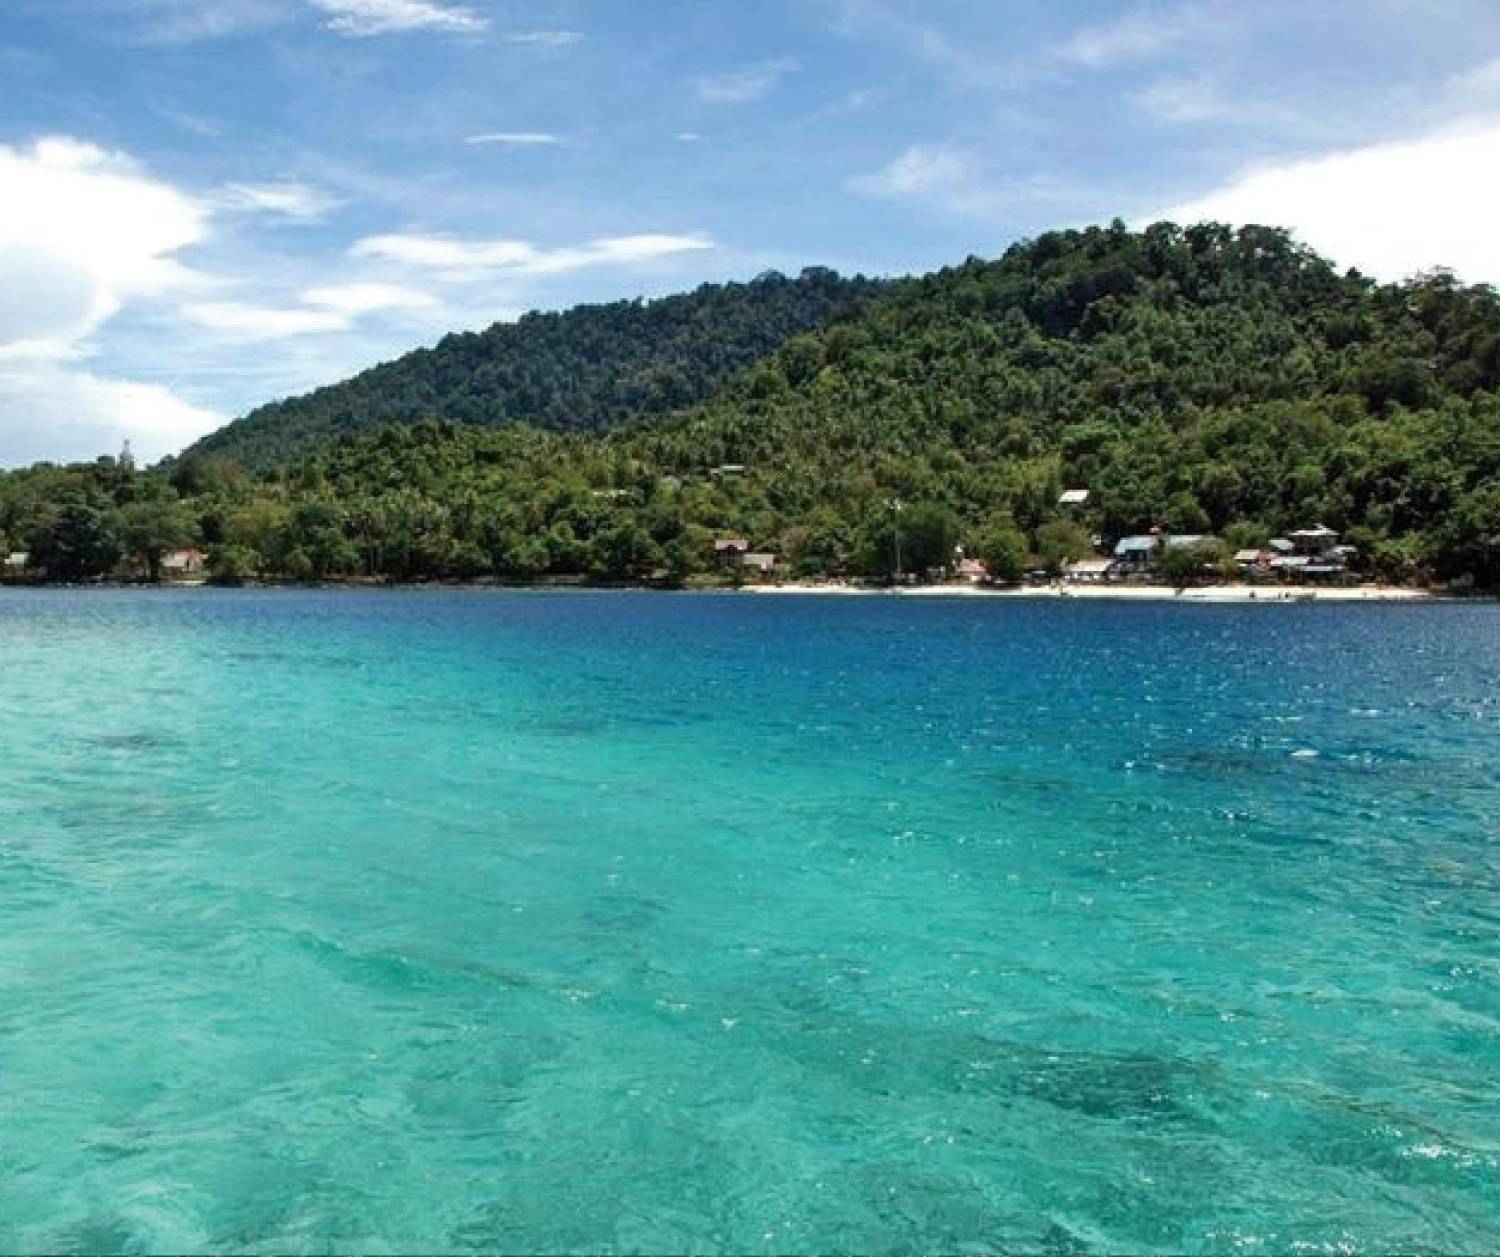 【Indonesia】Pulau Weh Resort 6 days 5 nights diving package